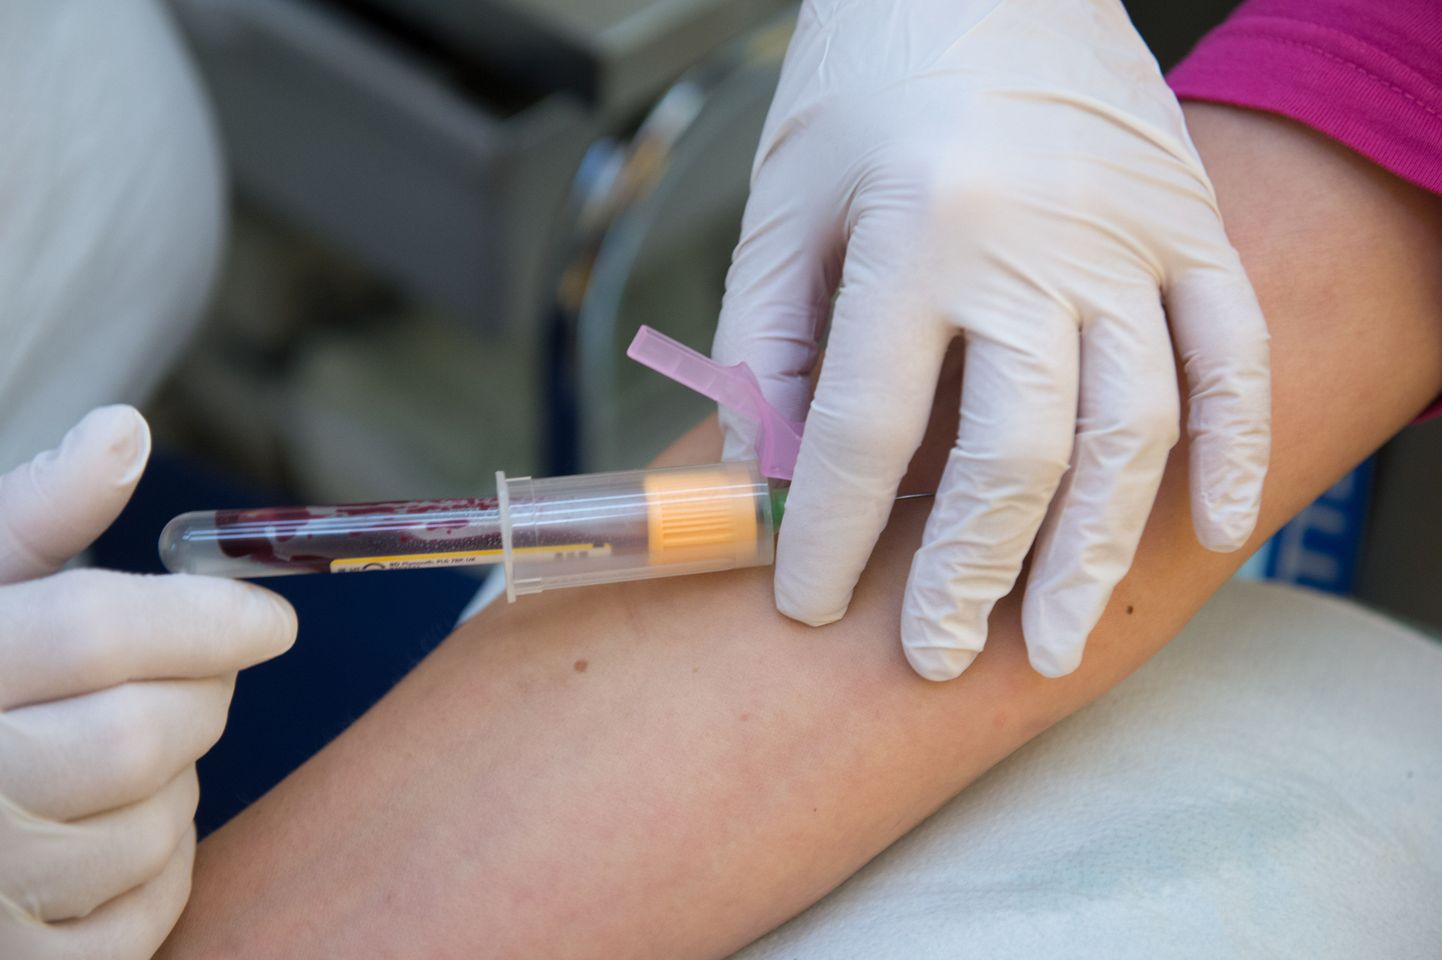 Uue veretesti abil saab tunni ajaga kindlaks teha, kas patsiendi haiguse põhjuseks on viirus või bakterid.